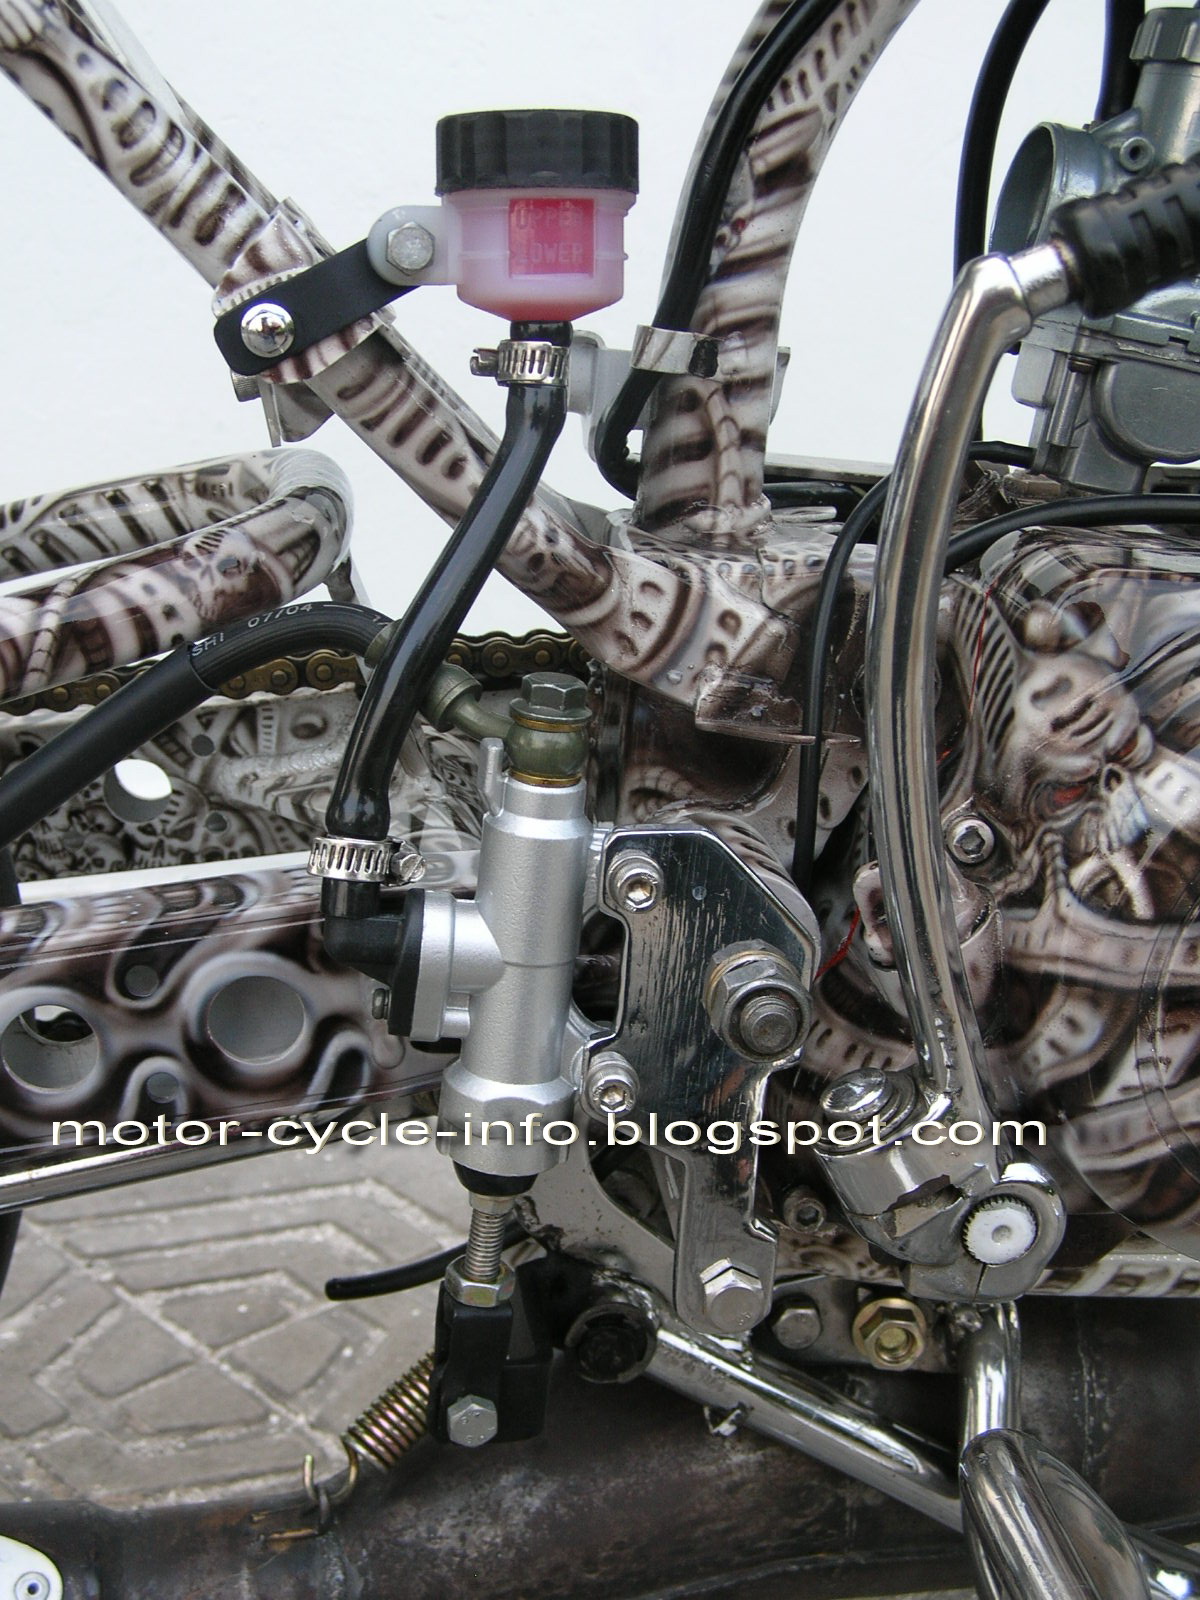 Motor Motoran Modif YAMAHA RX KING Airbrush Extreme